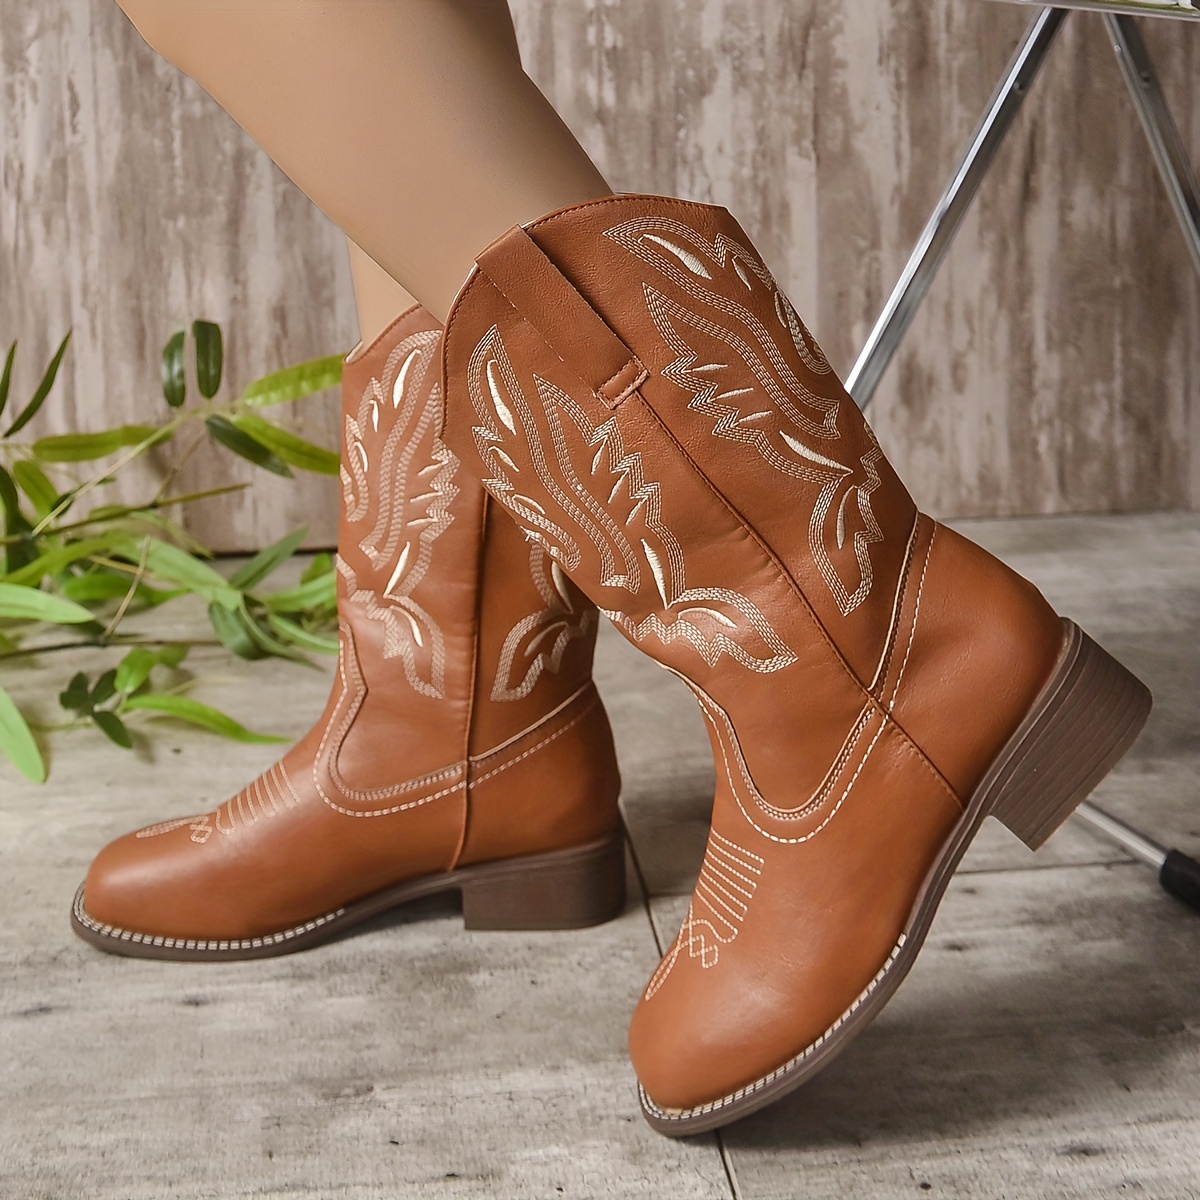 ymiytan bottes de cowboy pour les femmes tirent sur cowgirl botte large  largeur bas talon chaussures occidentales kaki 7